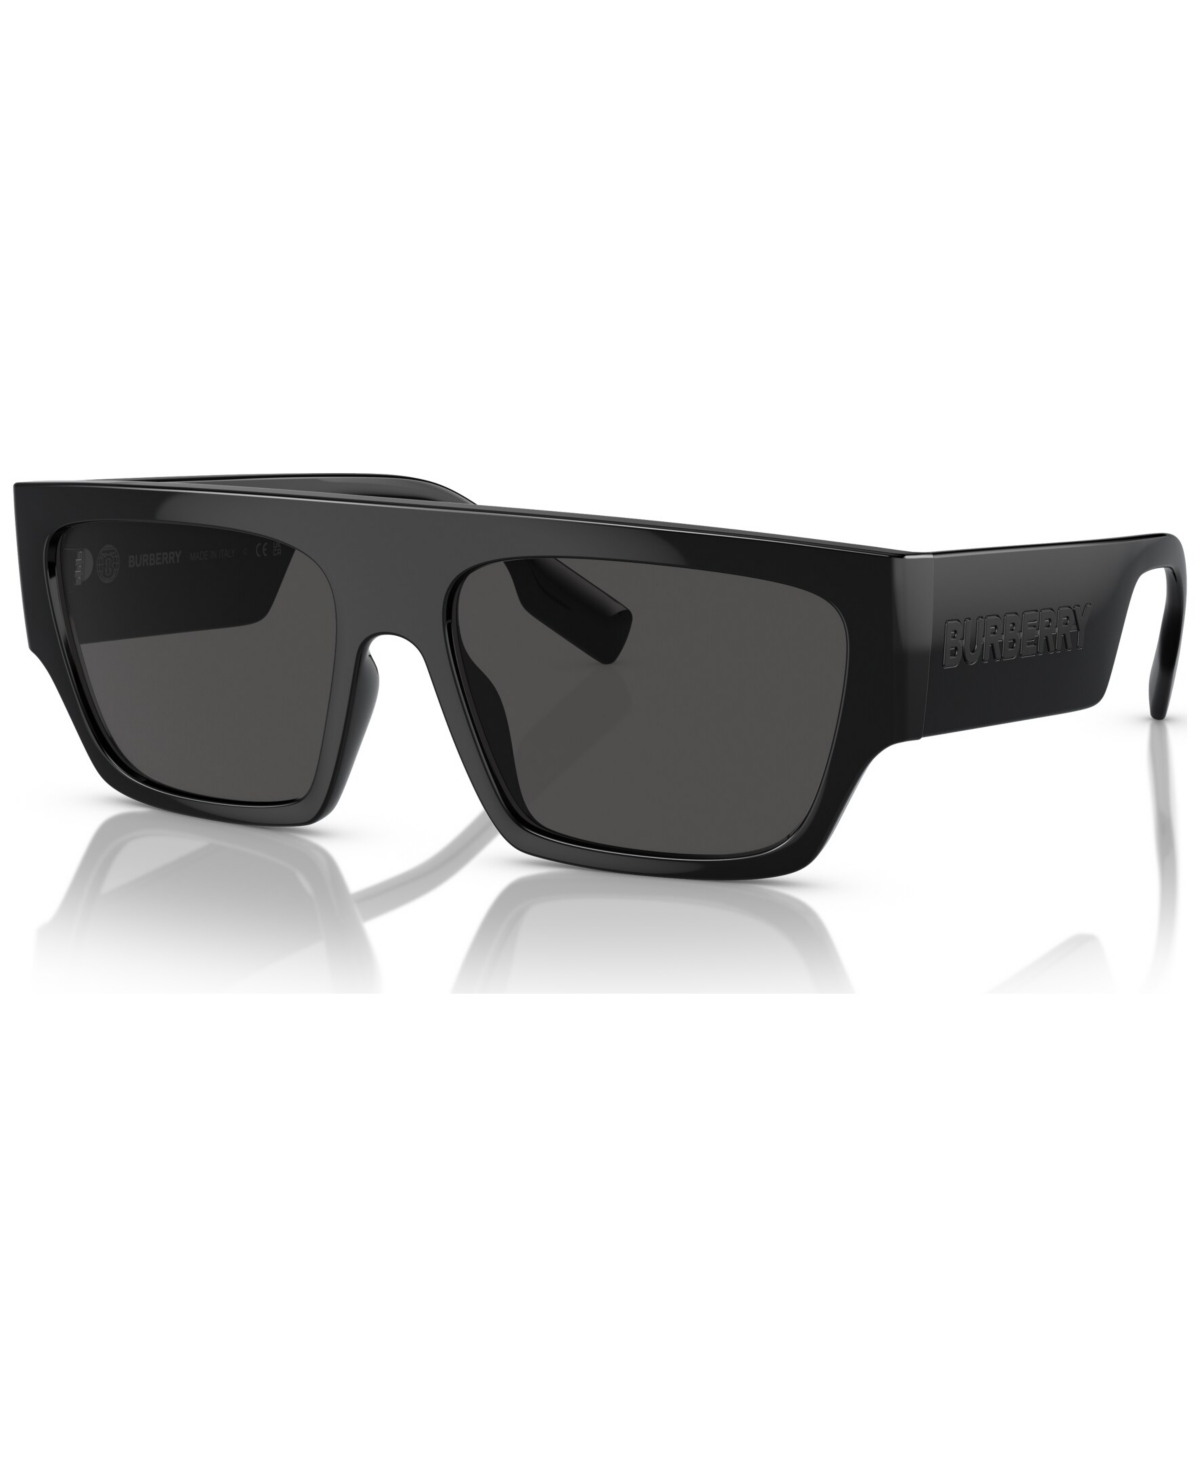 Burberry Men's Sunglasses, Micah In Black